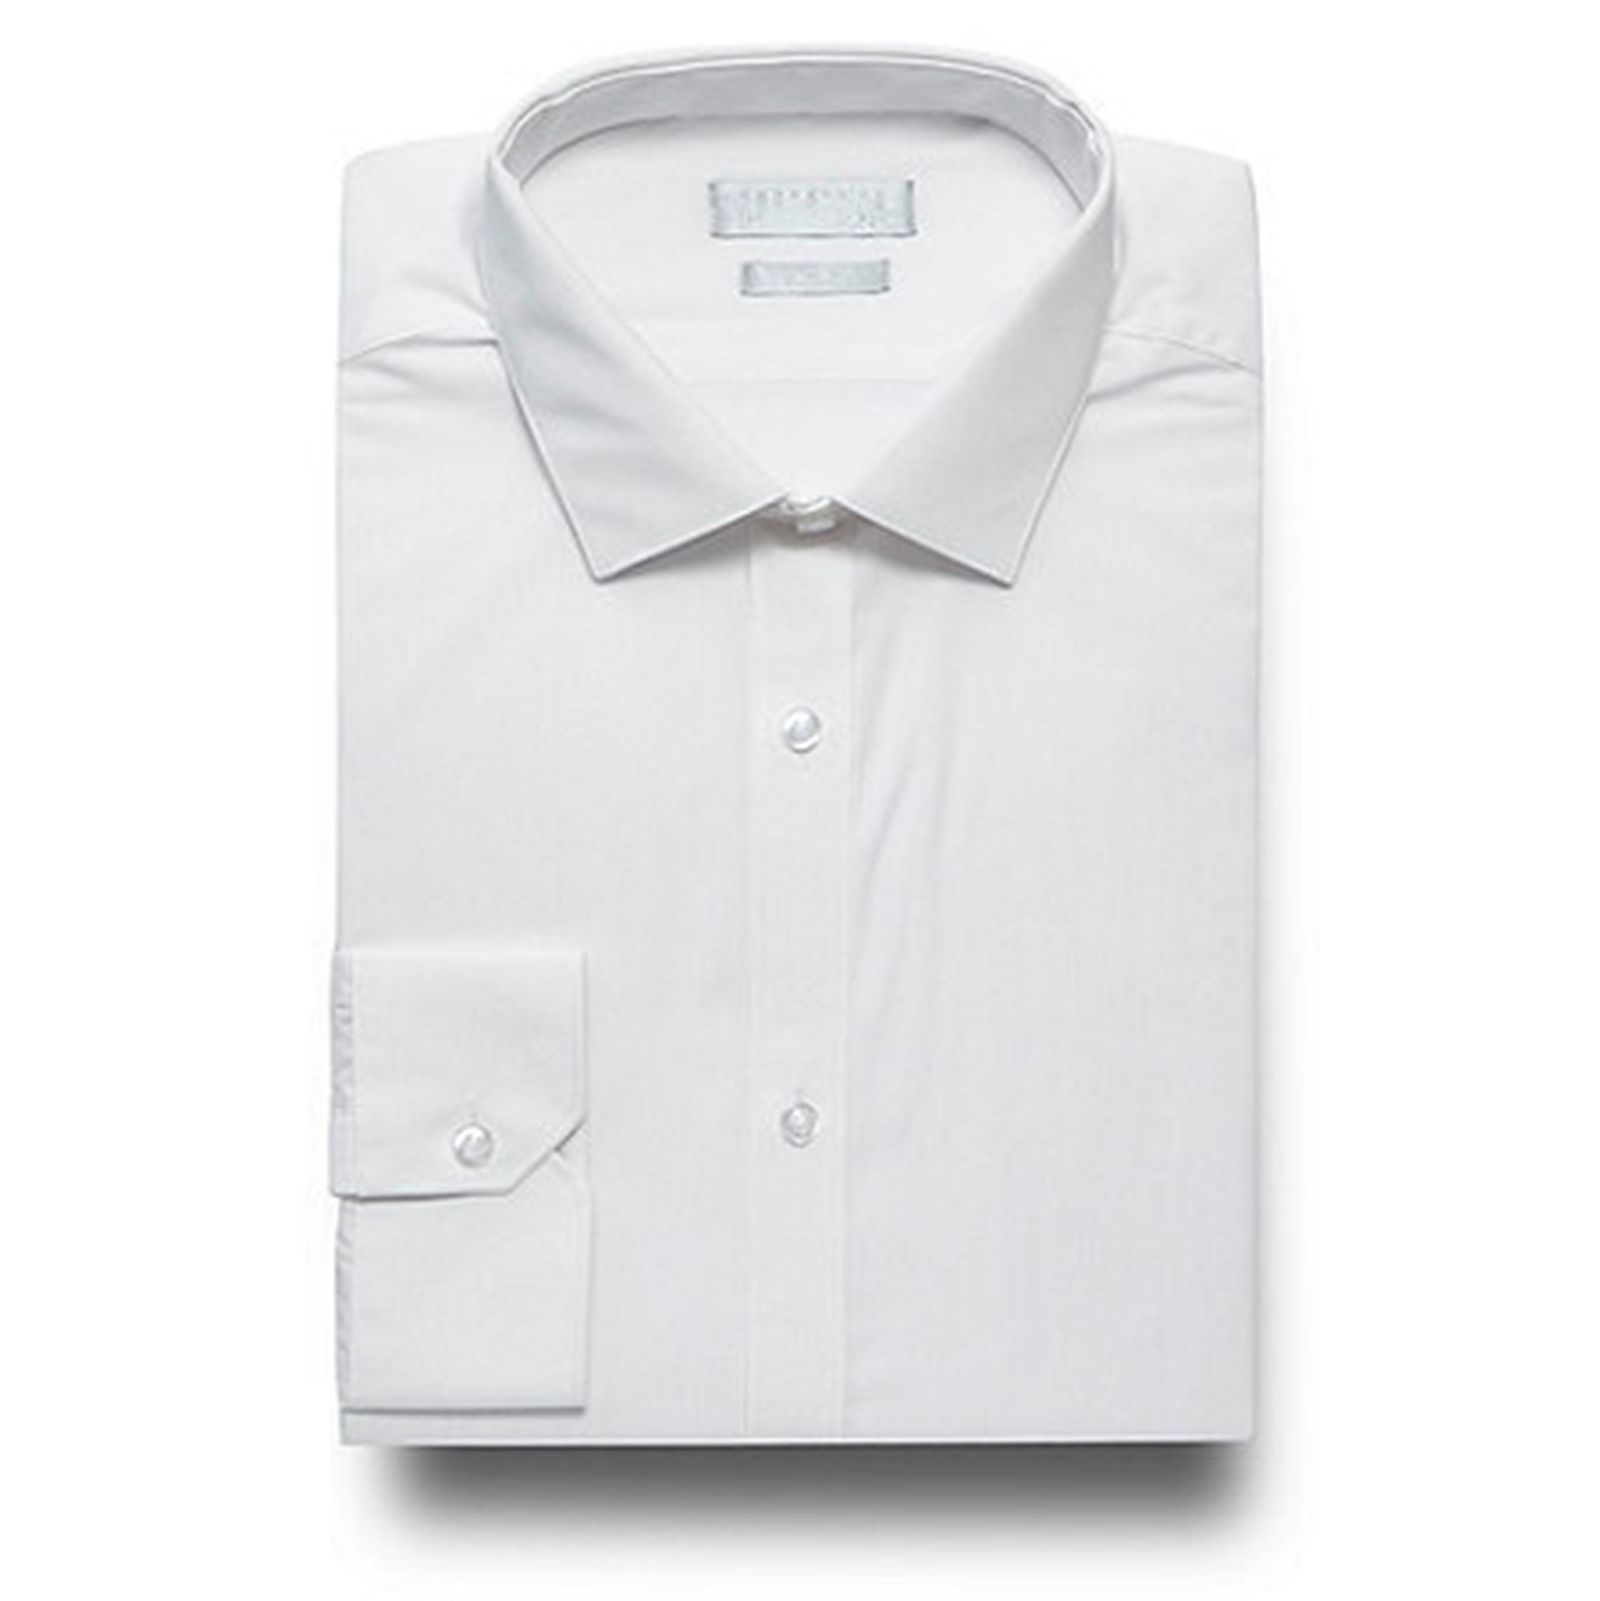 پیراهن رسمی مردانه - رد هرینگ - سفيد - 2